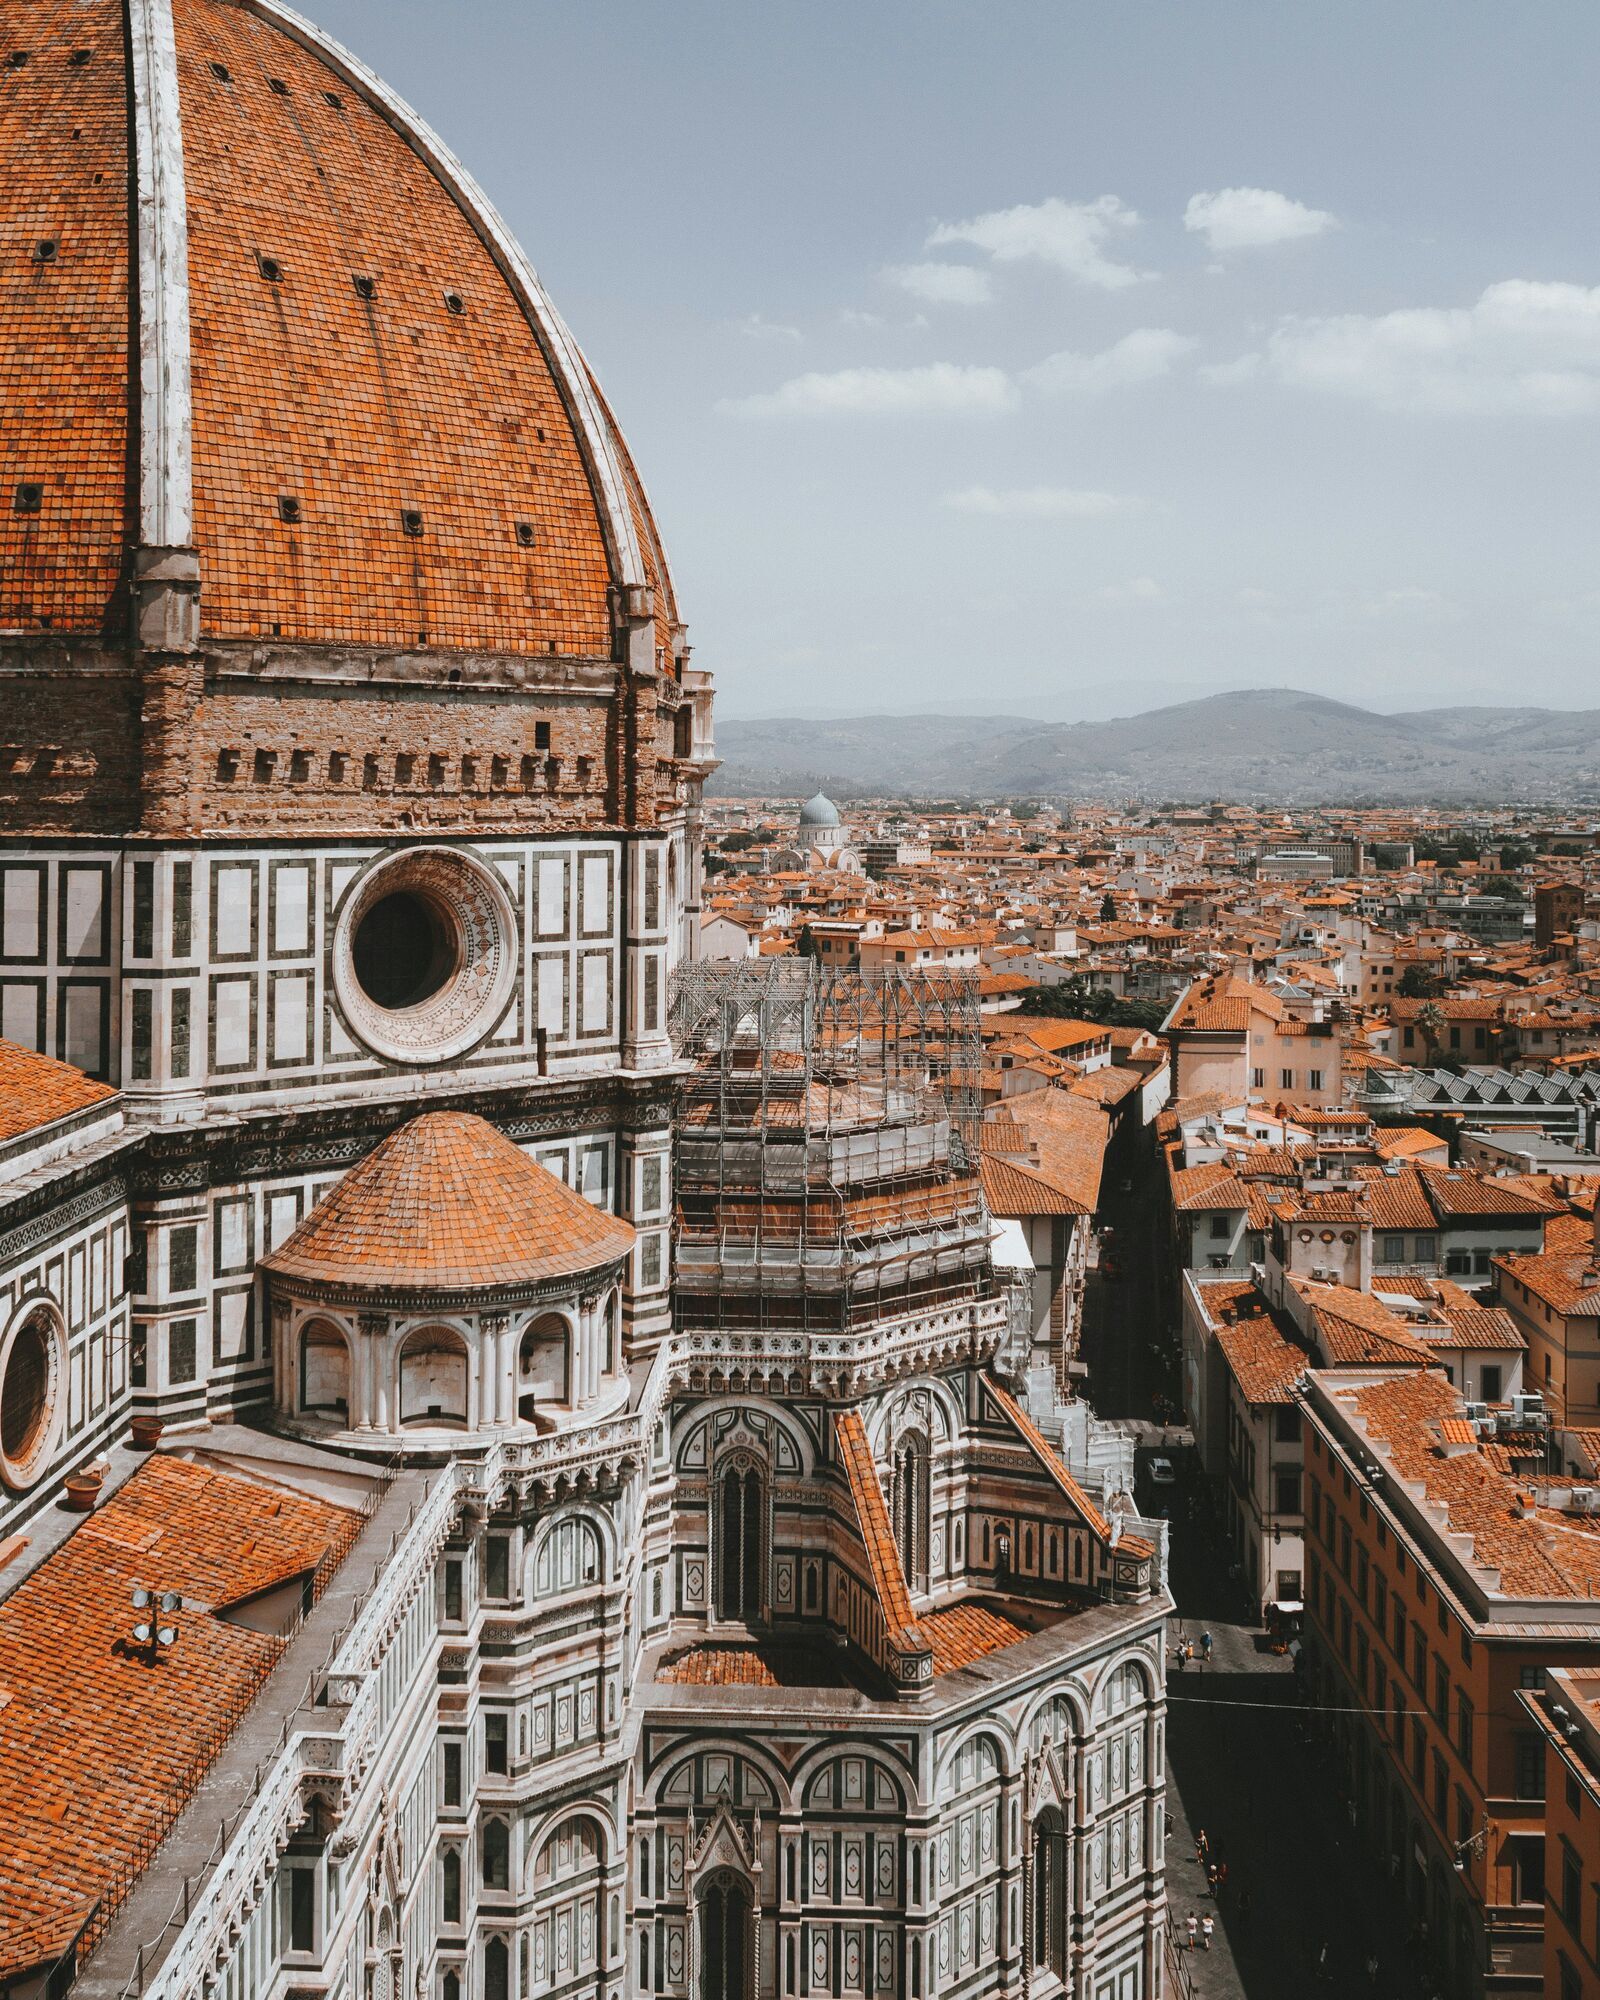 "Туристы превратили Флоренцию в проститутку": директор итальянского музея родом из Германии спровоцировала громкий скандал